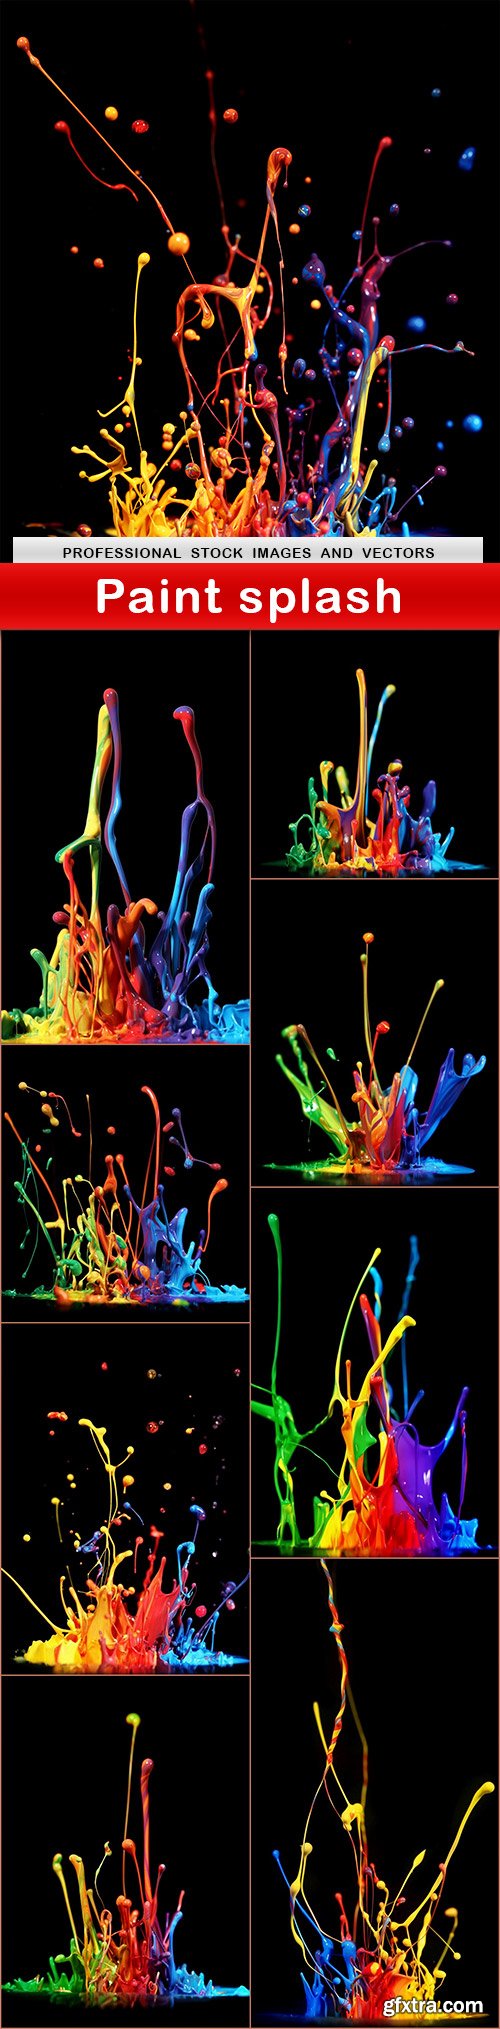 Paint splash - 9 UHQ JPEG